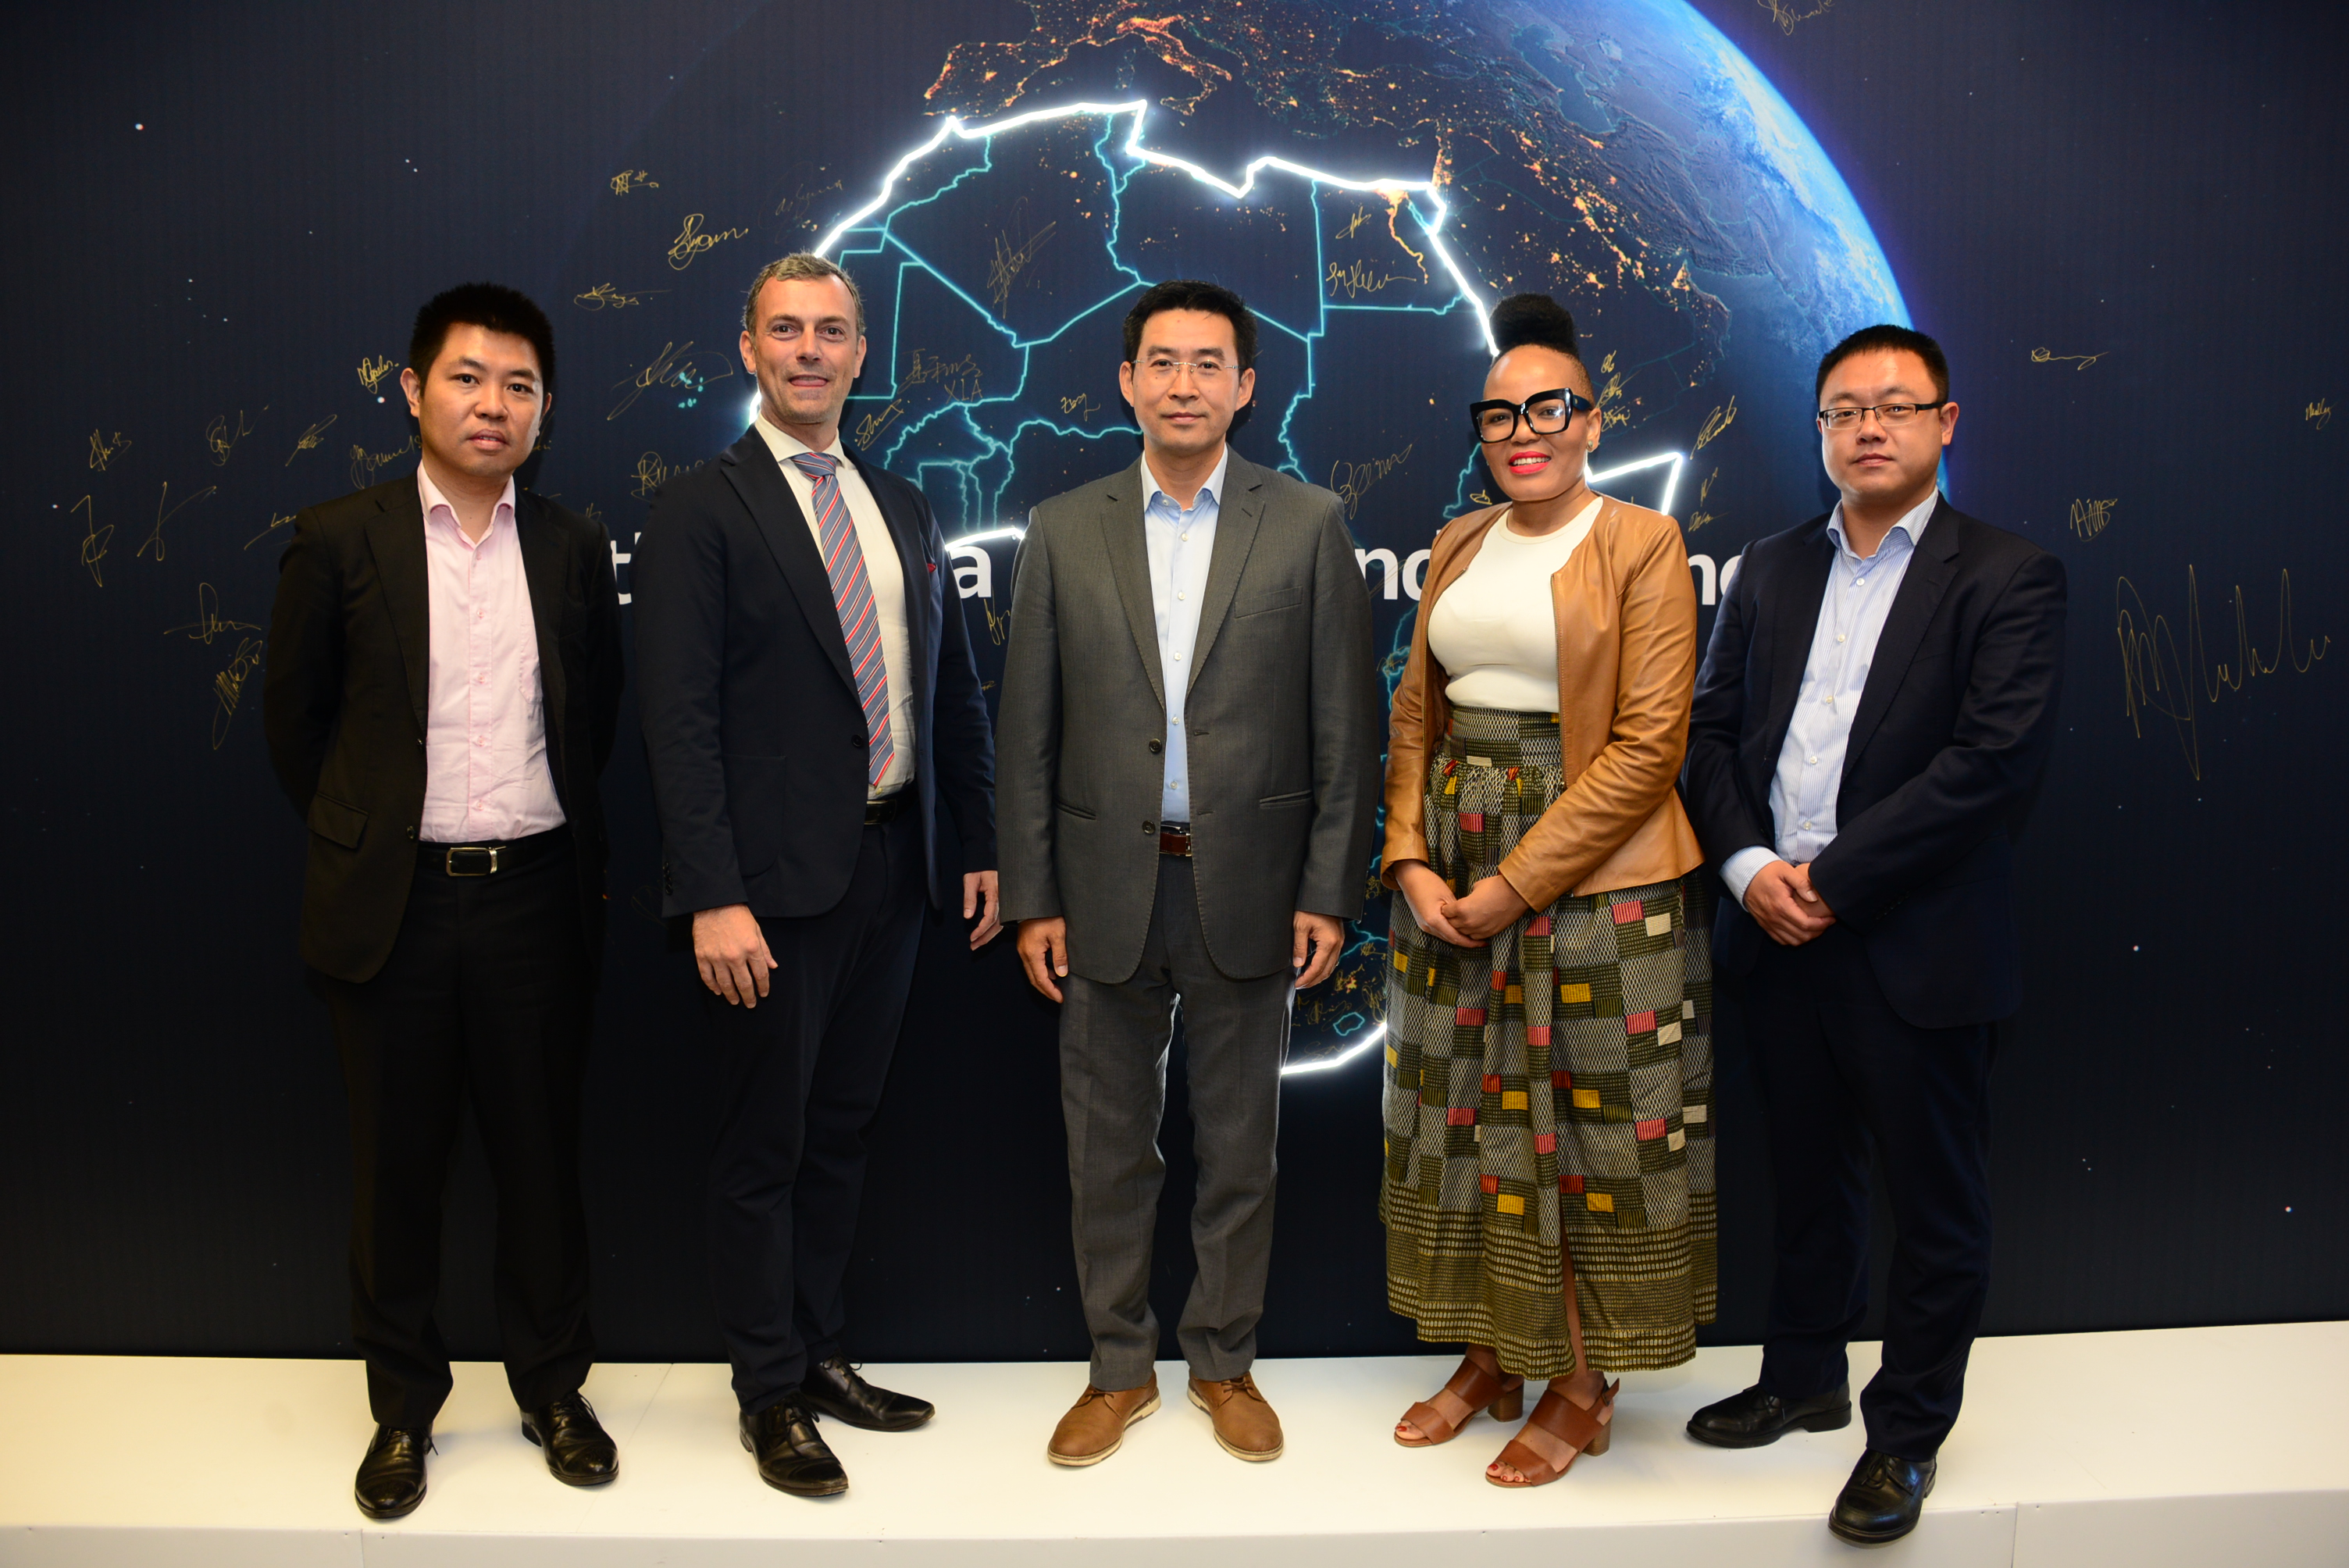 Left to Right: Mr. Zhang Yu, Huawei; Mr. John van Zuylen, AFSIA; Mr. Xia Hesheng, Huawei; Dr. Rethabile Melamu, SAPVIA; Mr. Bian Changle, Huawei